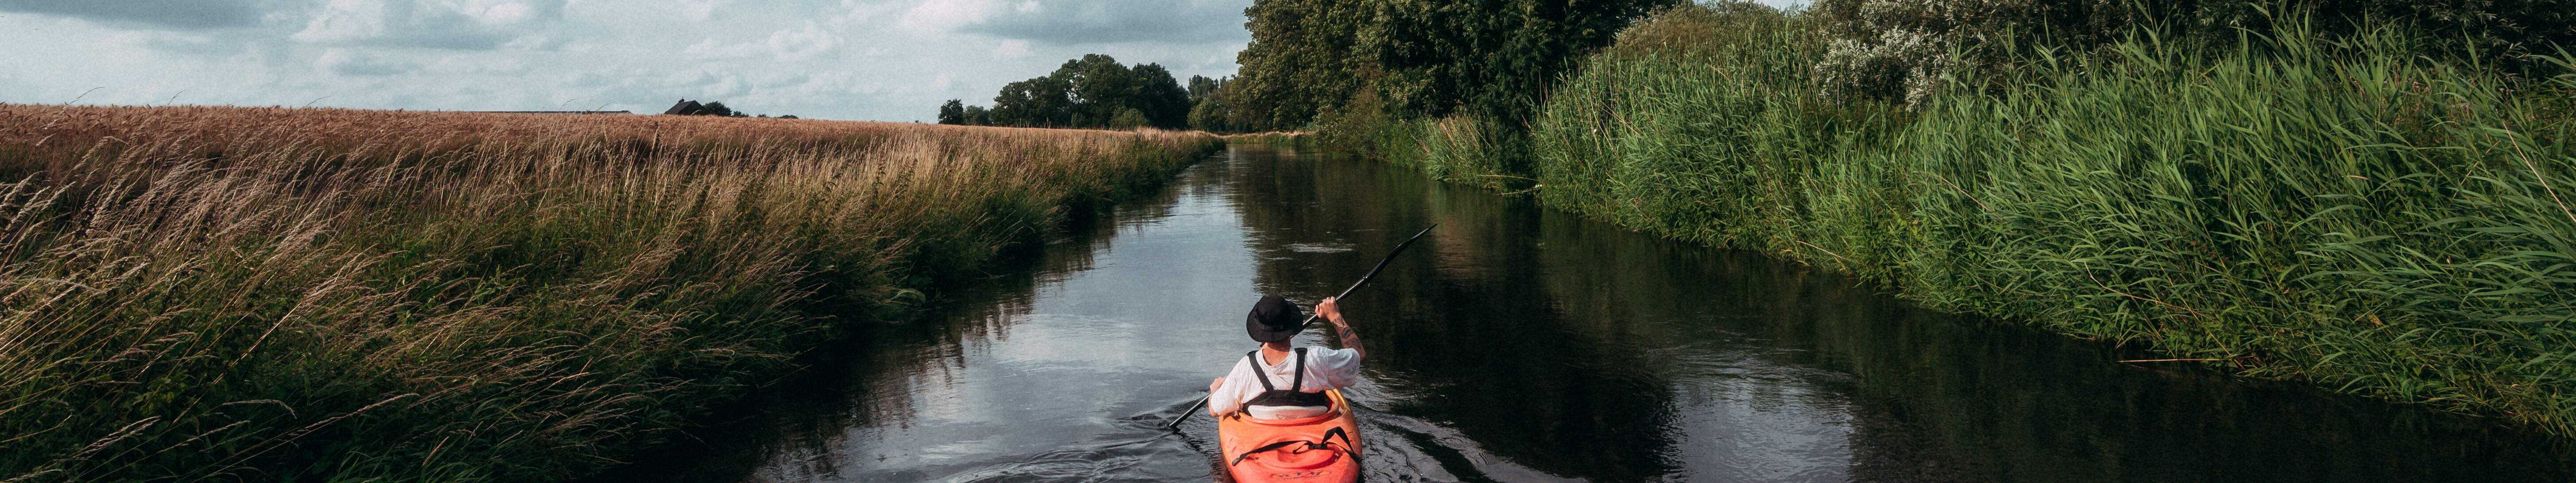 Ein Mensch fährt mit einem roten Kajak fahren auf der Niers am Niederrhein. Die Flussauen sind dicht mit Gräsern und Bäumen bewachsen.  © Tourismus NRW e.V./Johannes Höhn